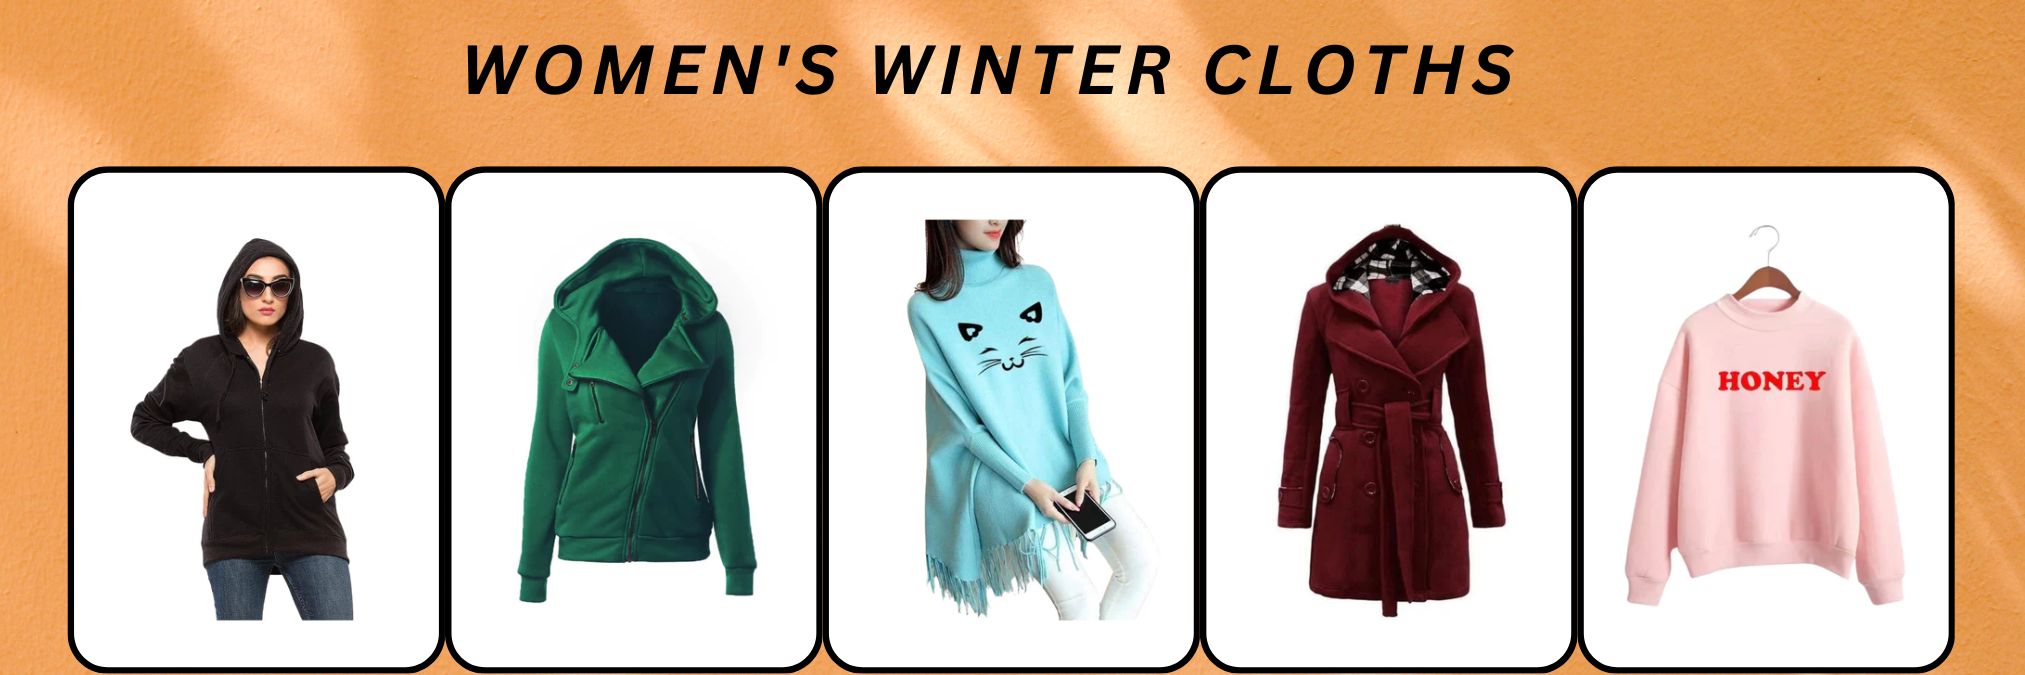 Women's Winter Cloths